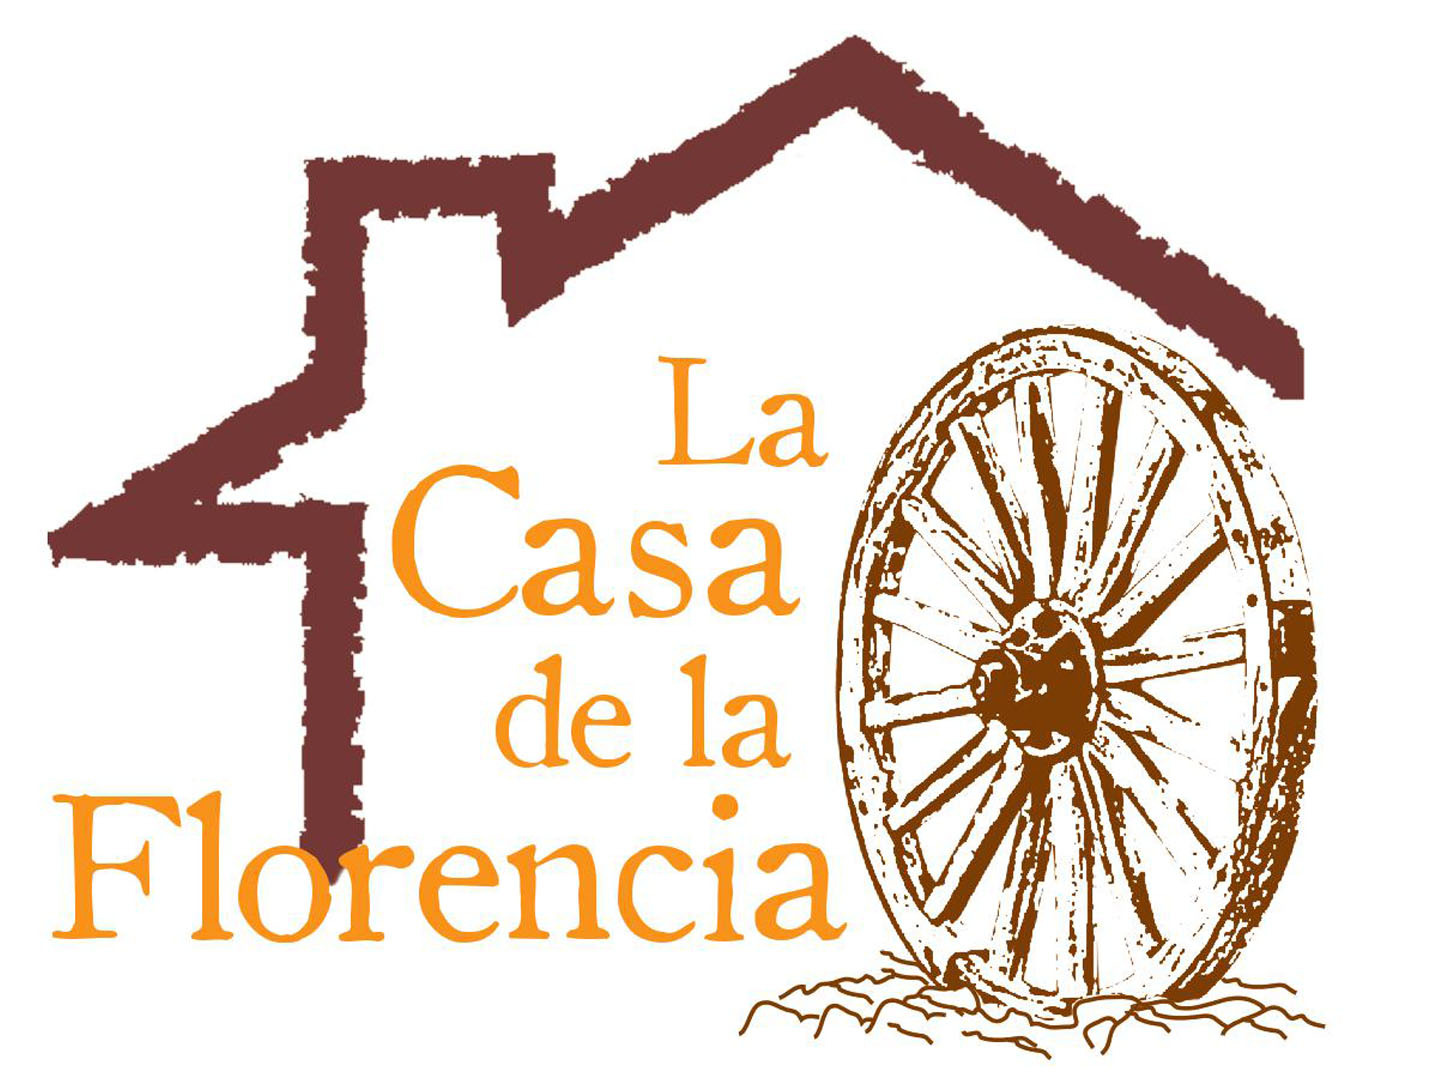 Casa Rural, La Casa de la Florencia